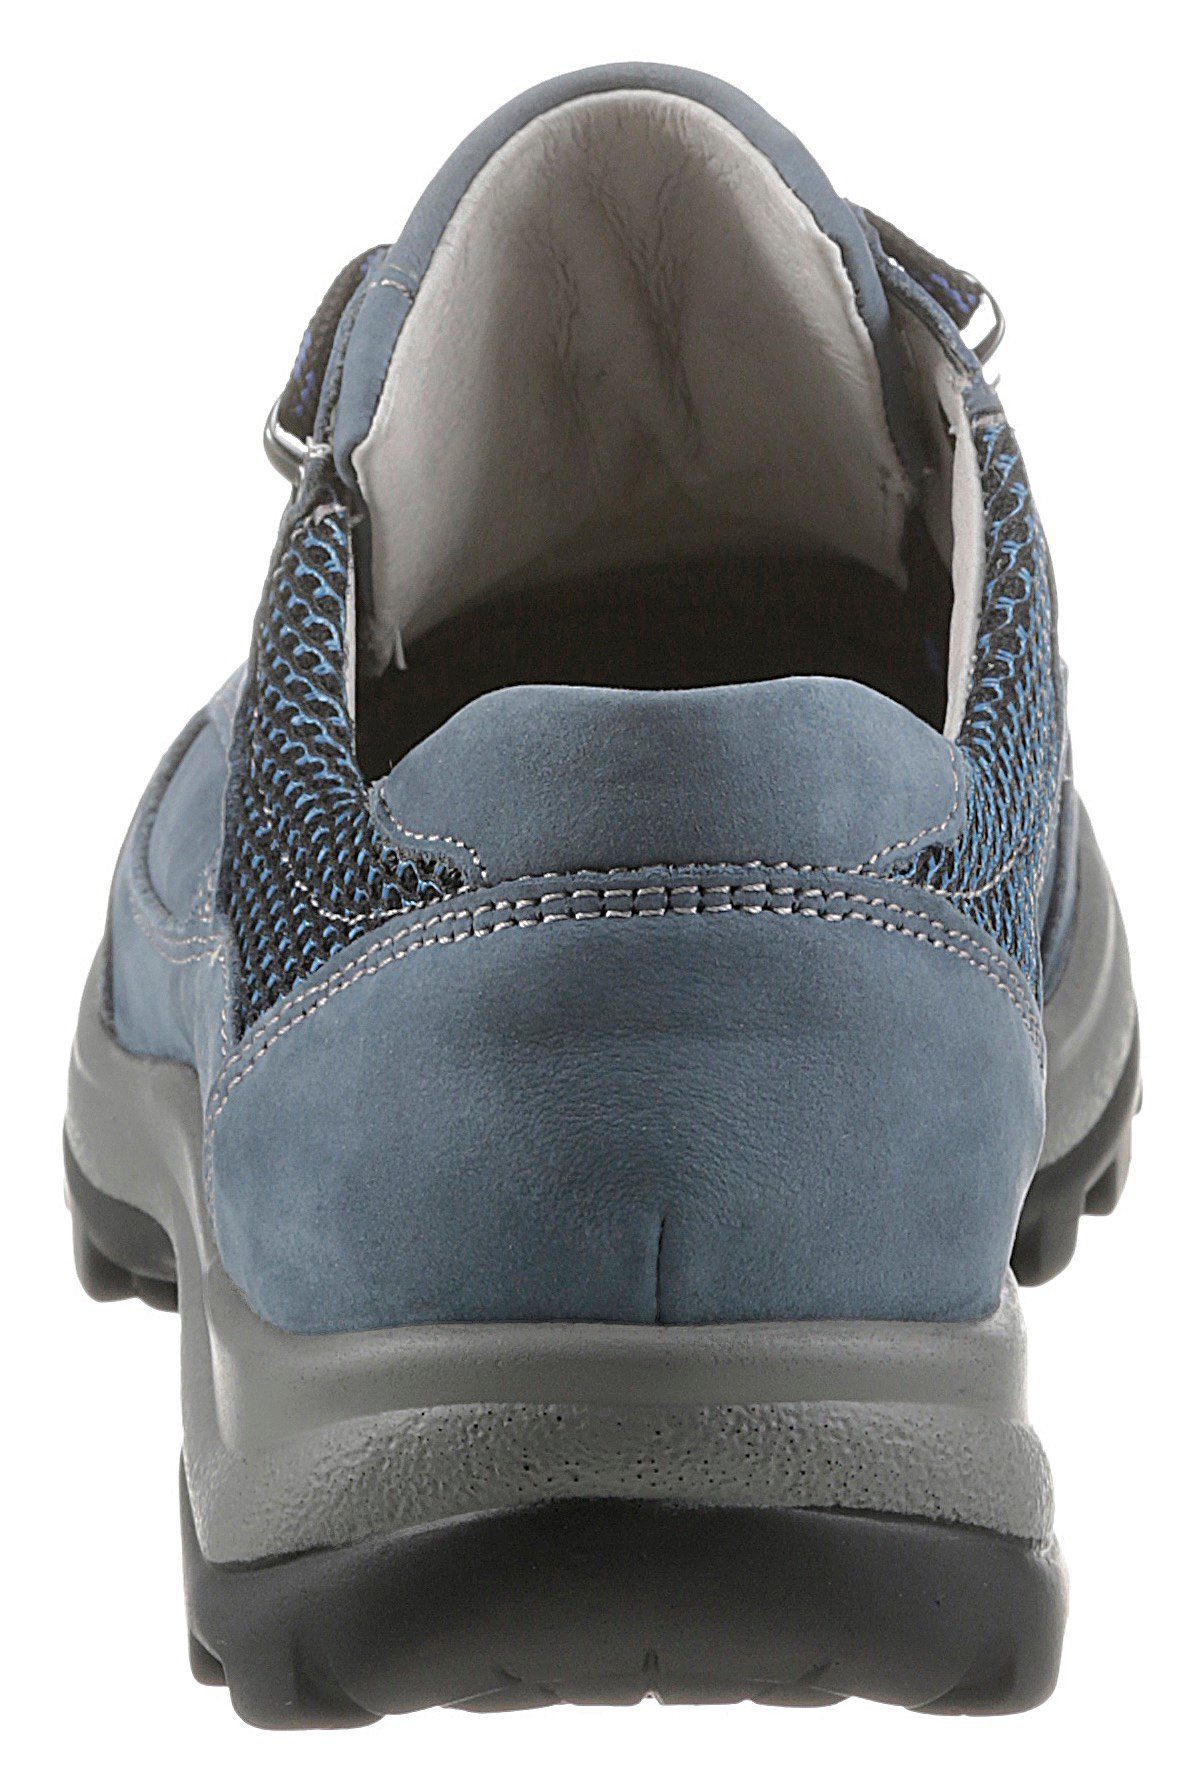 Schnürschuh mit herausnehmbarem jeansblau-kombiniert Waldläufer HOLLY Fußbett